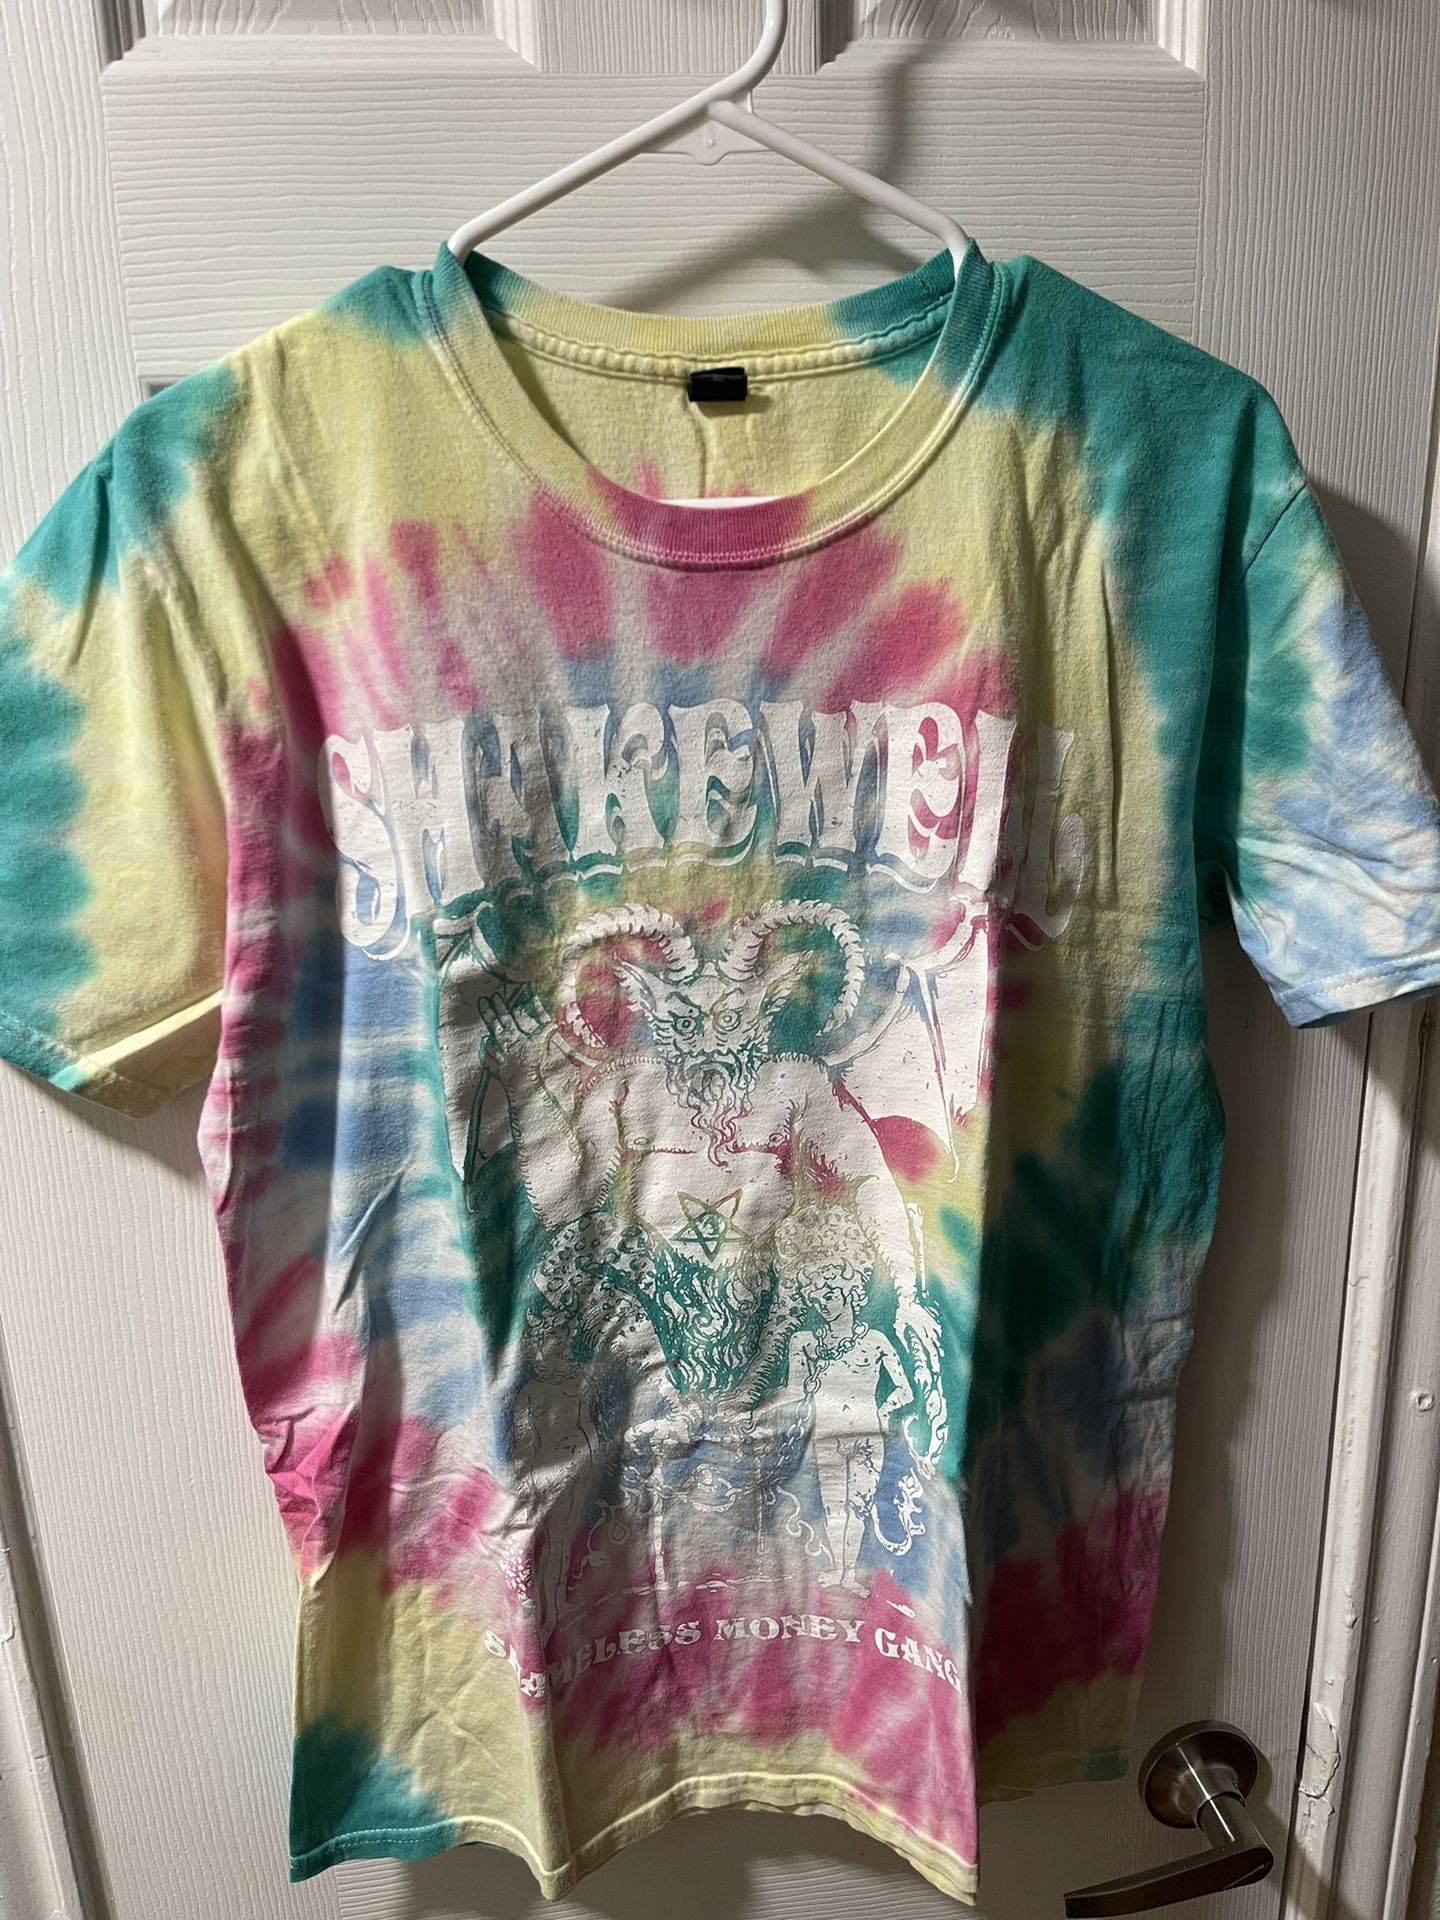 Shakewell Devil Tye Dye Shirt